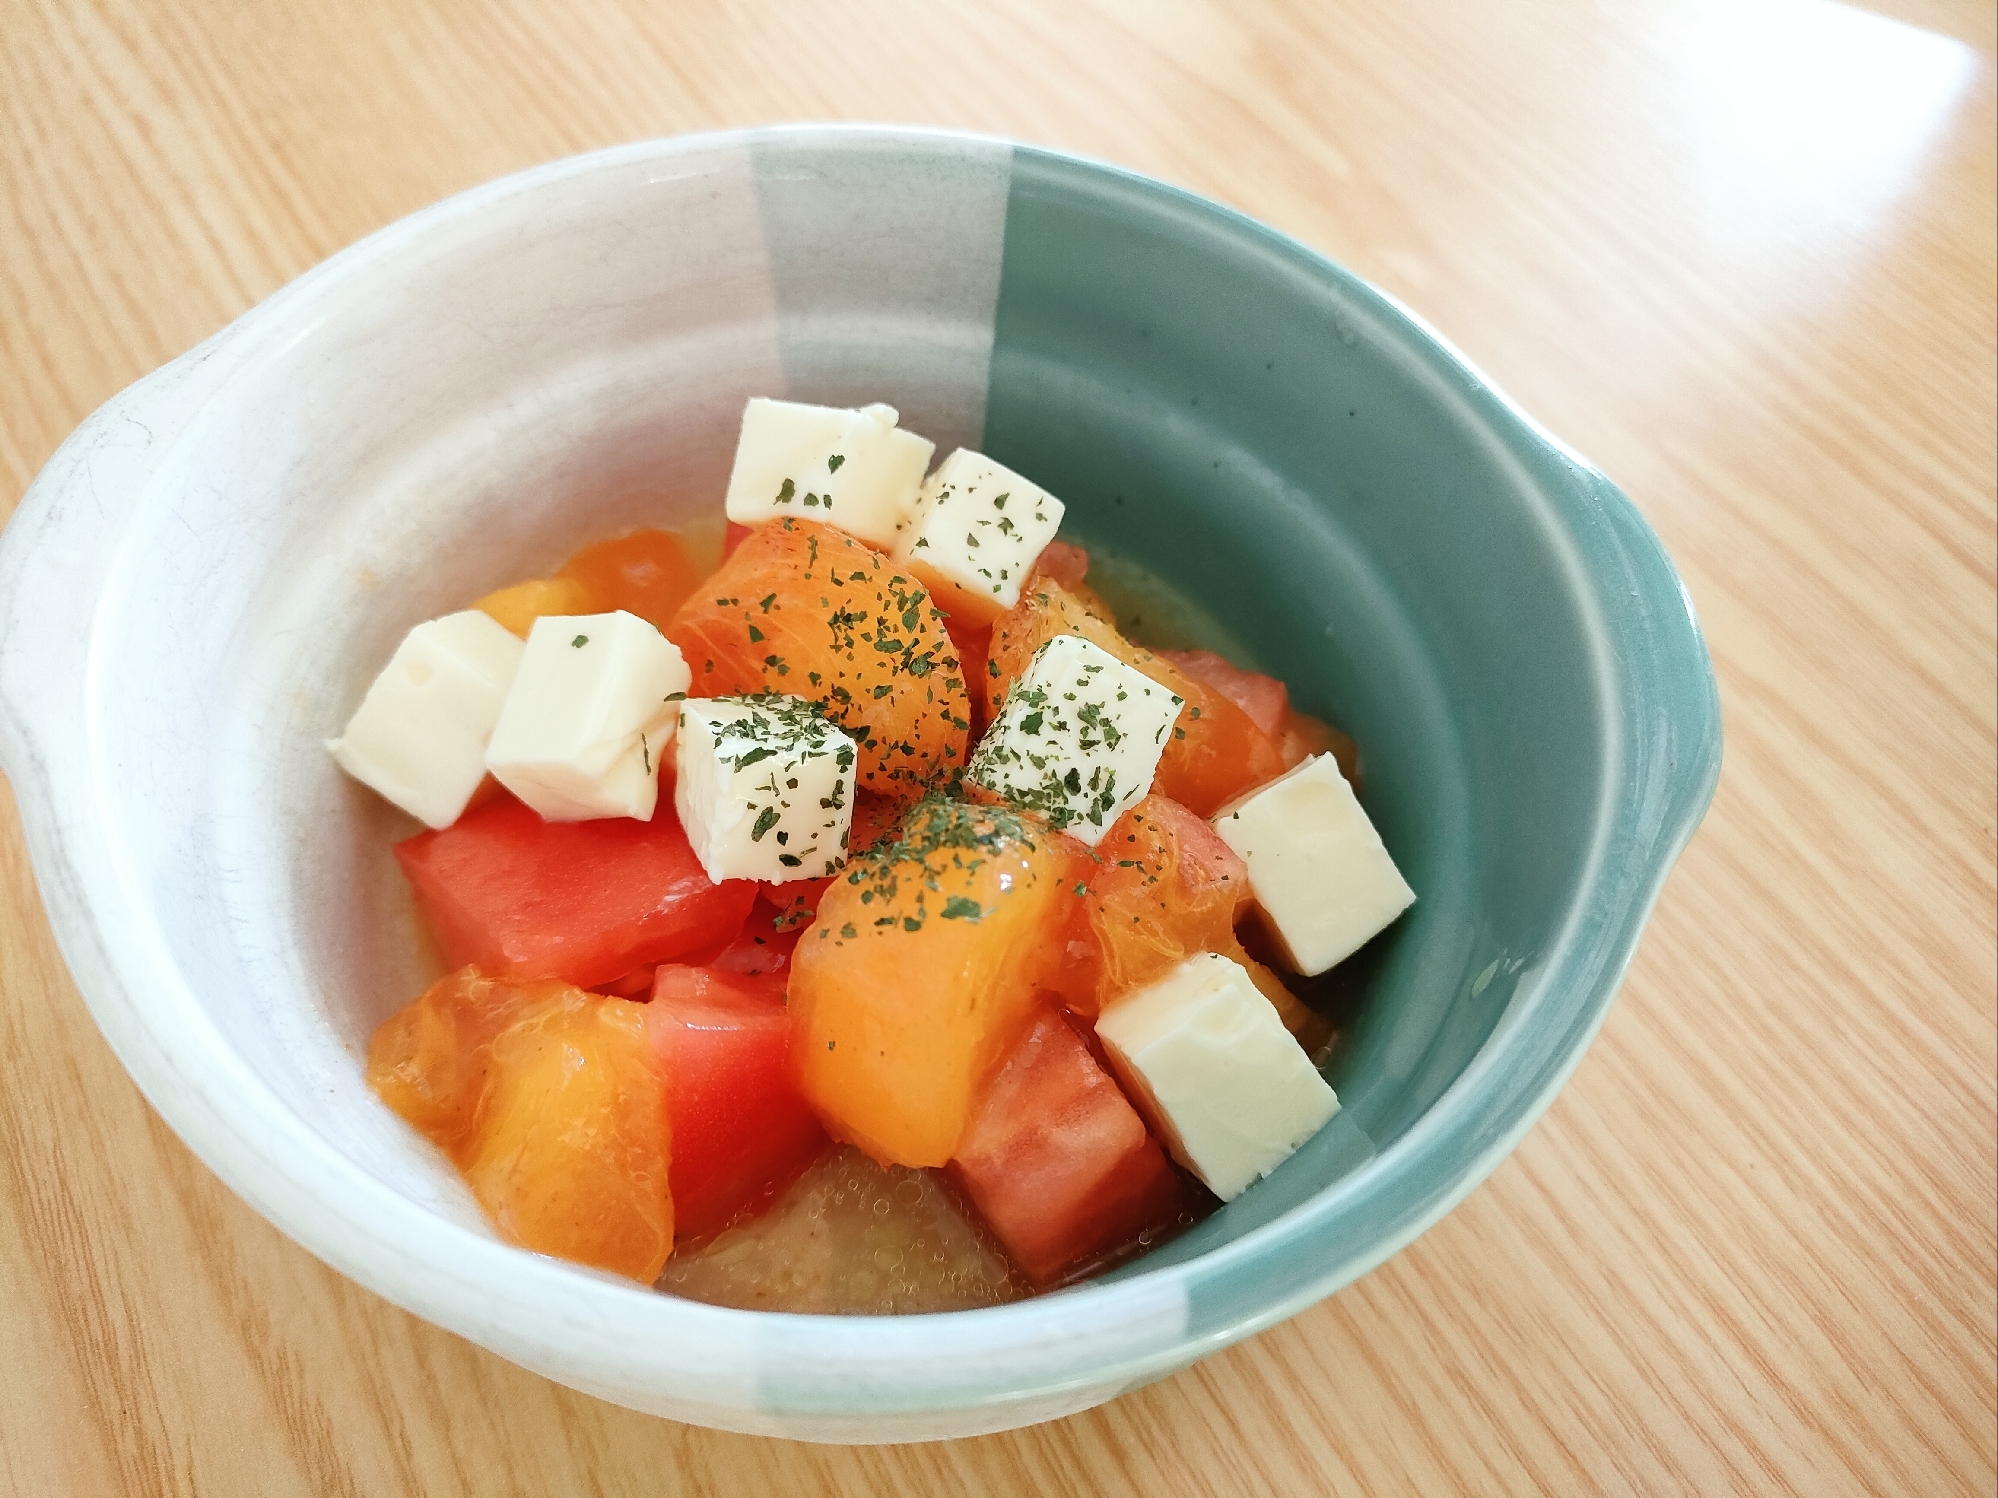 柚子こしょう風味☆柿とトマトとベビーチーズのサラダ